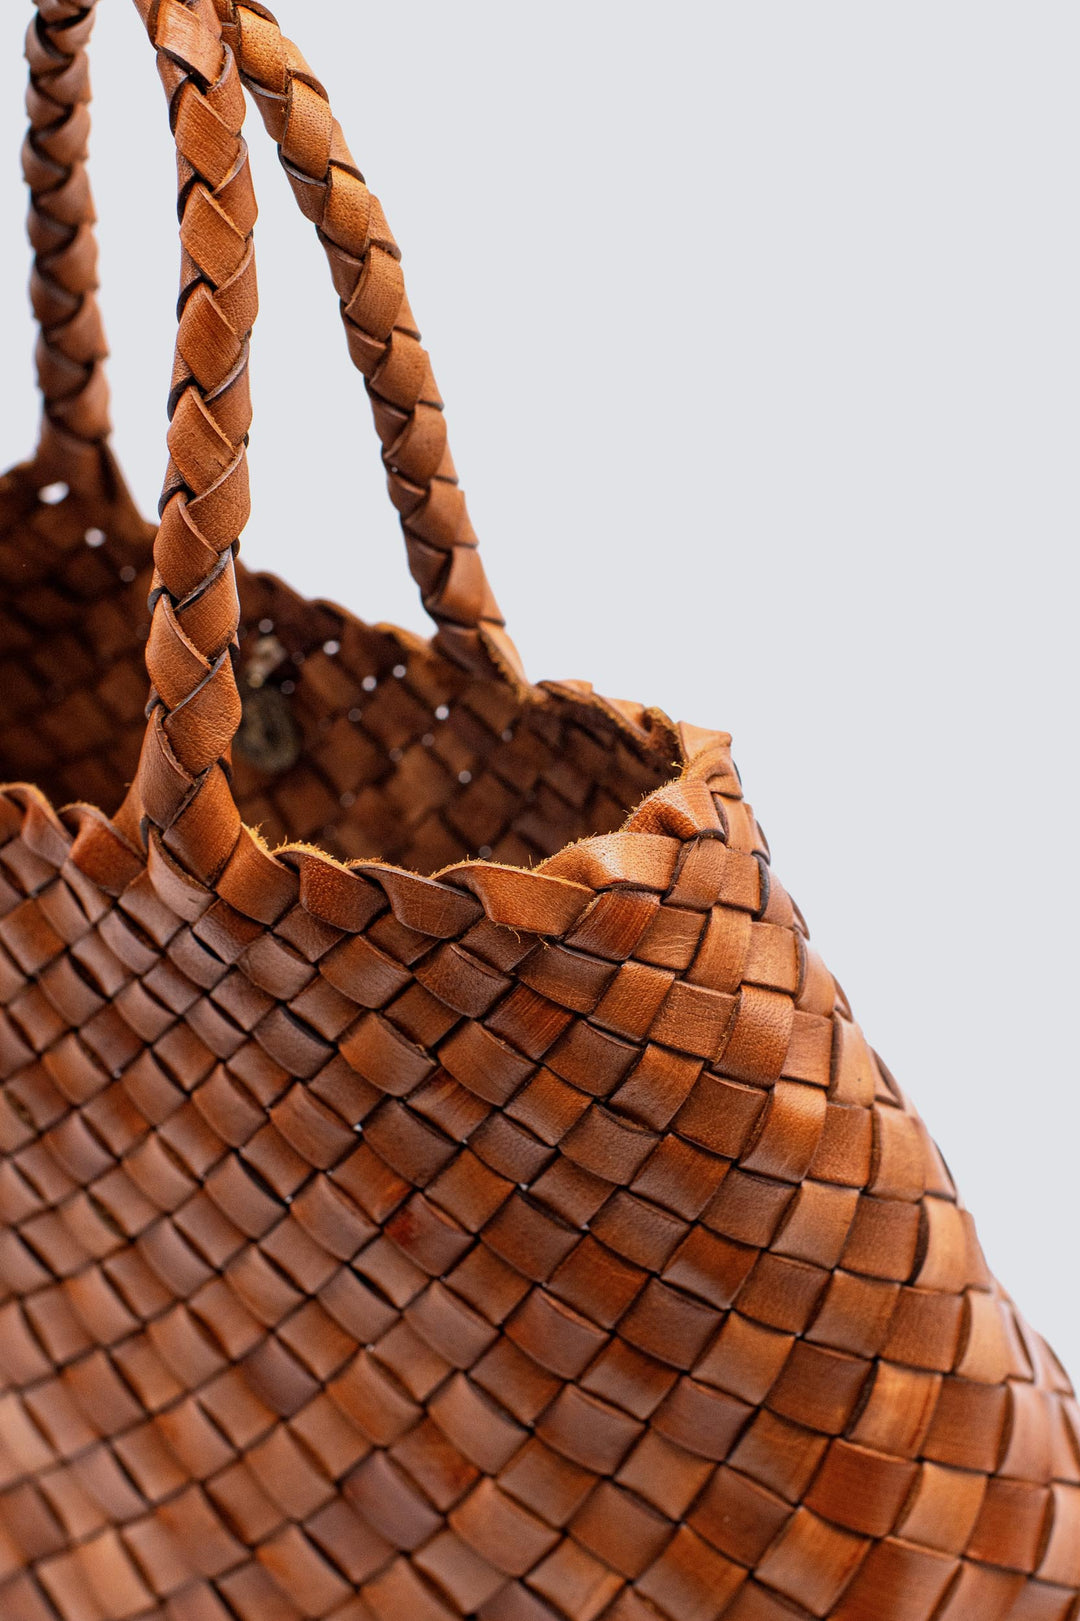 Dragon Diffusion - EW Corso Tan Woven Leather Bag